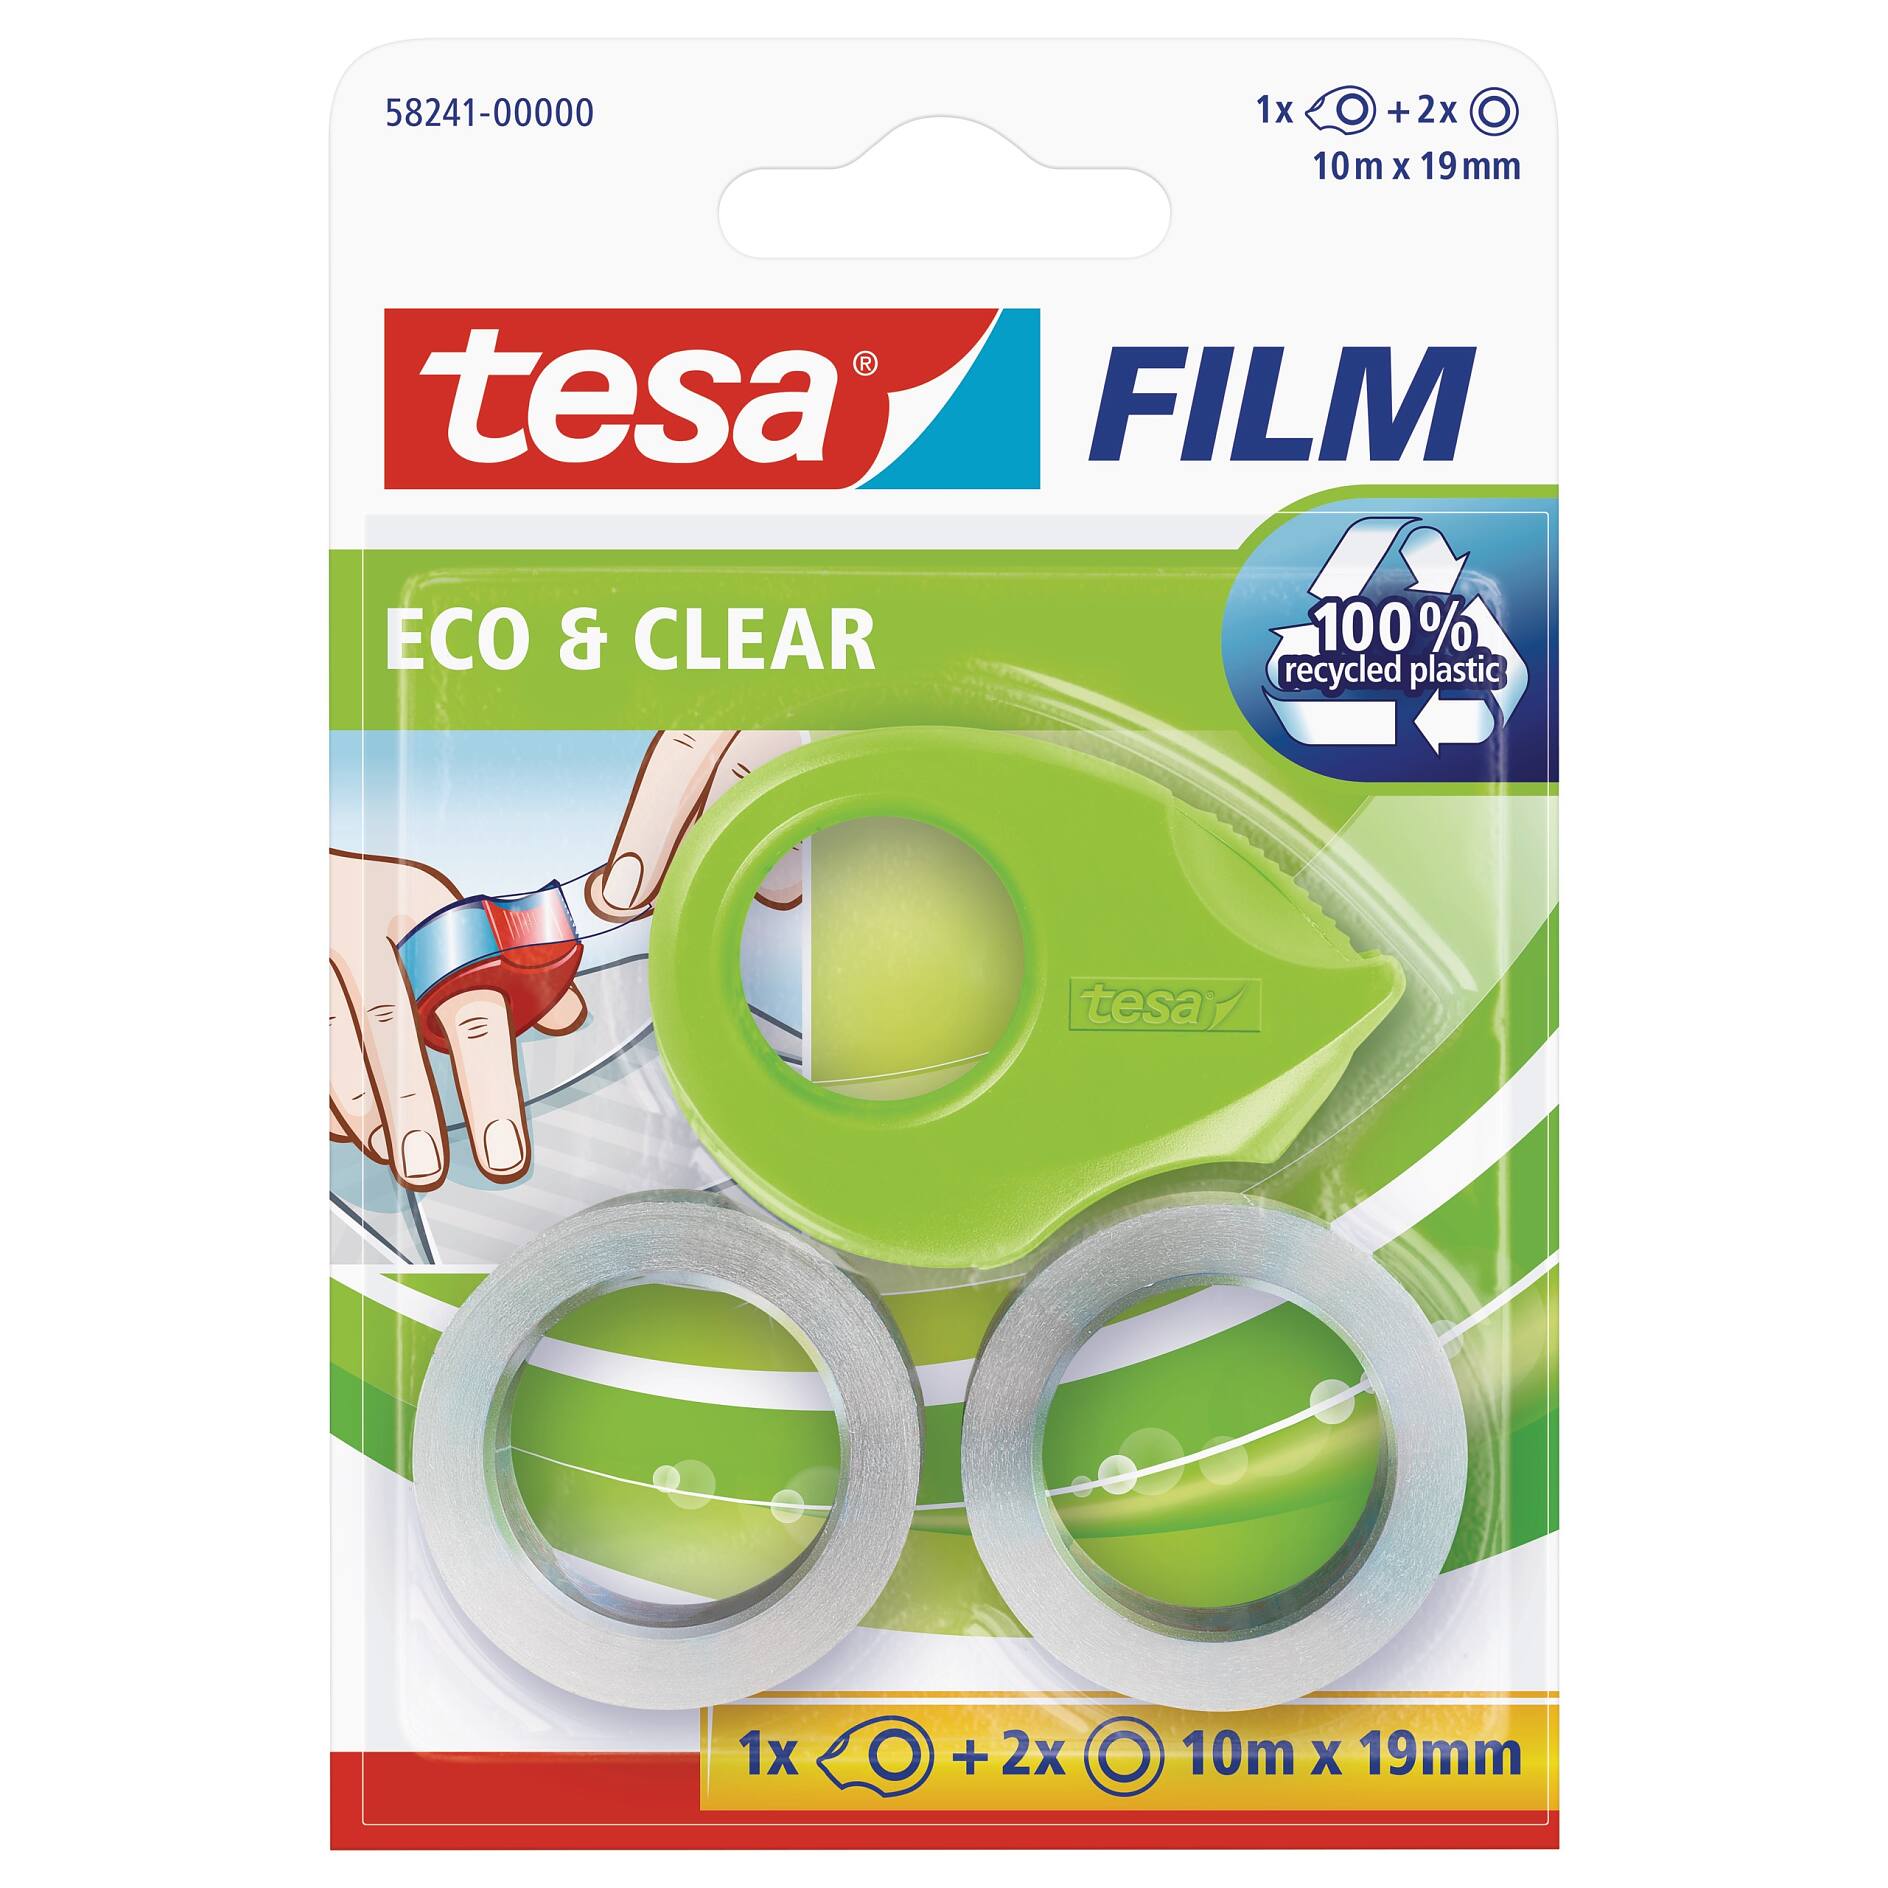 TESA Dissolvant pour colle 200ml 600420000 - Ecomedia AG